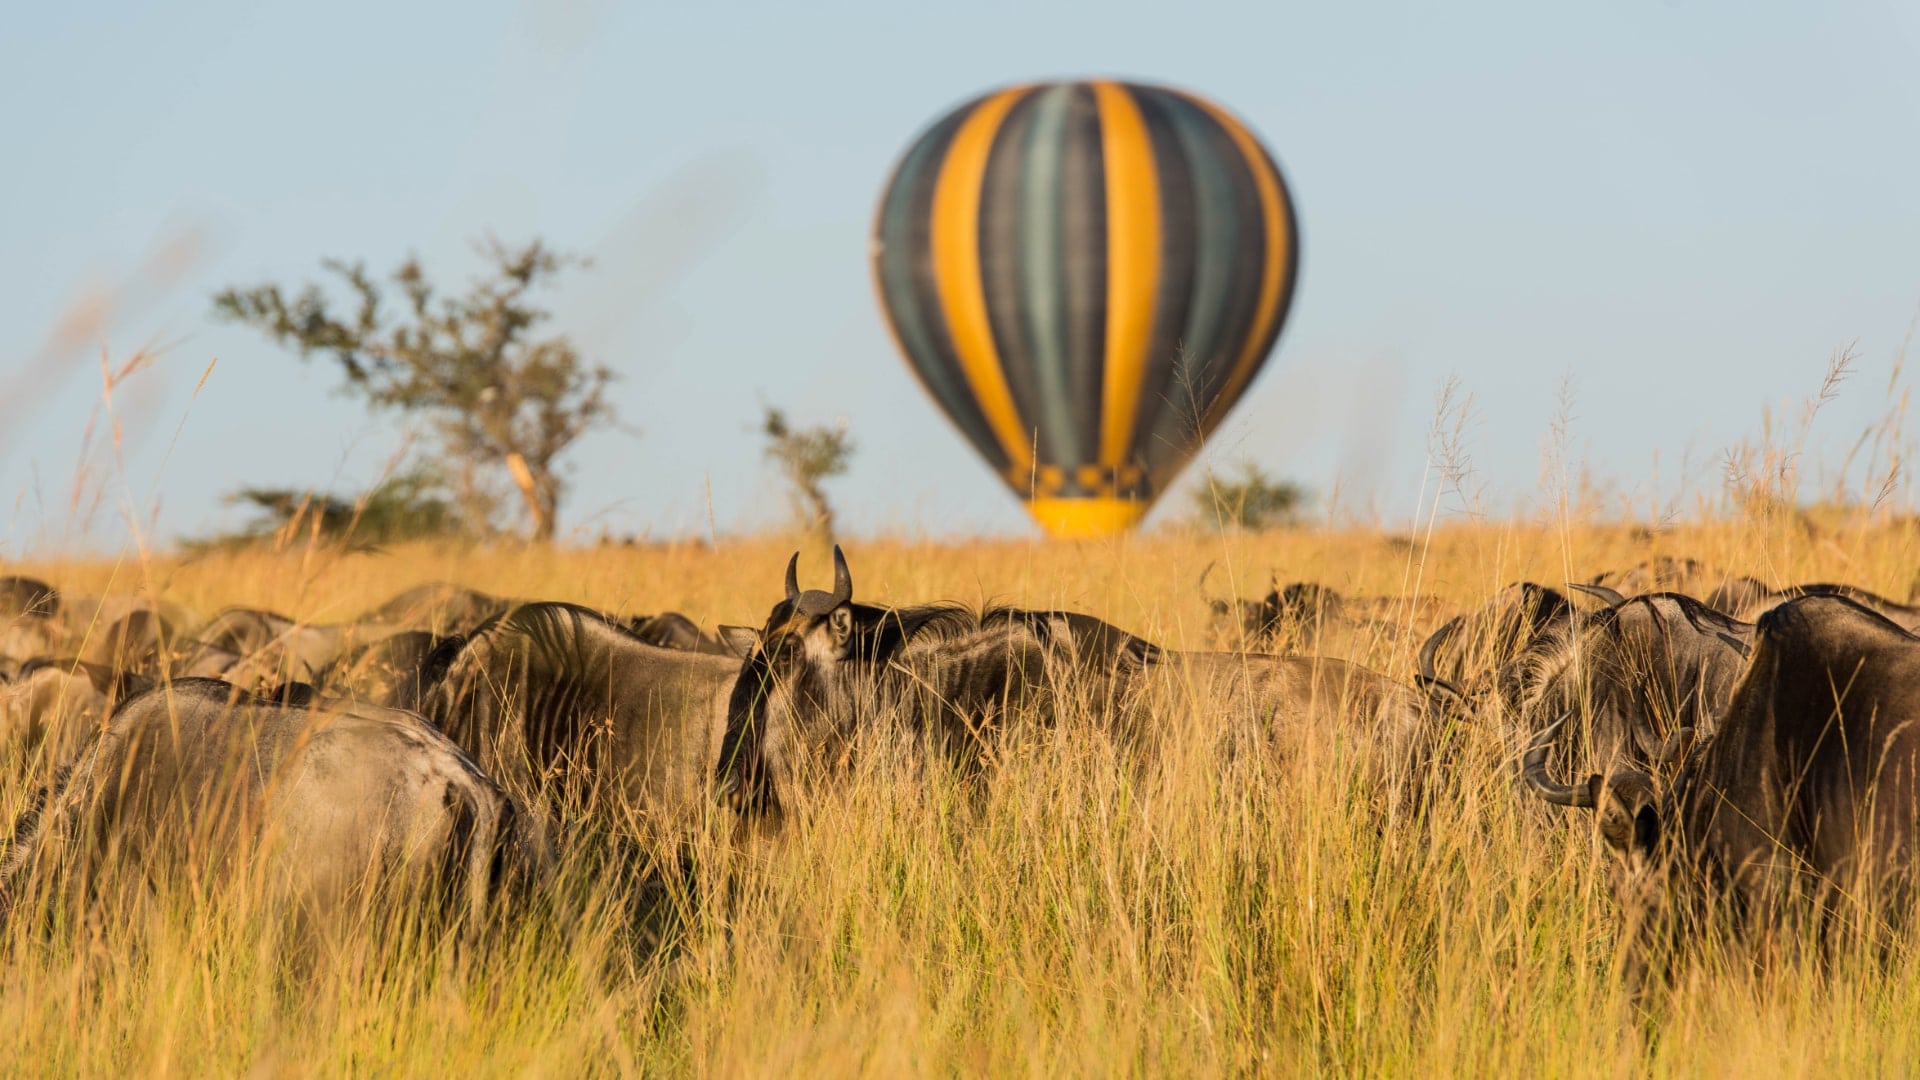 wildebeest migration balloon safari